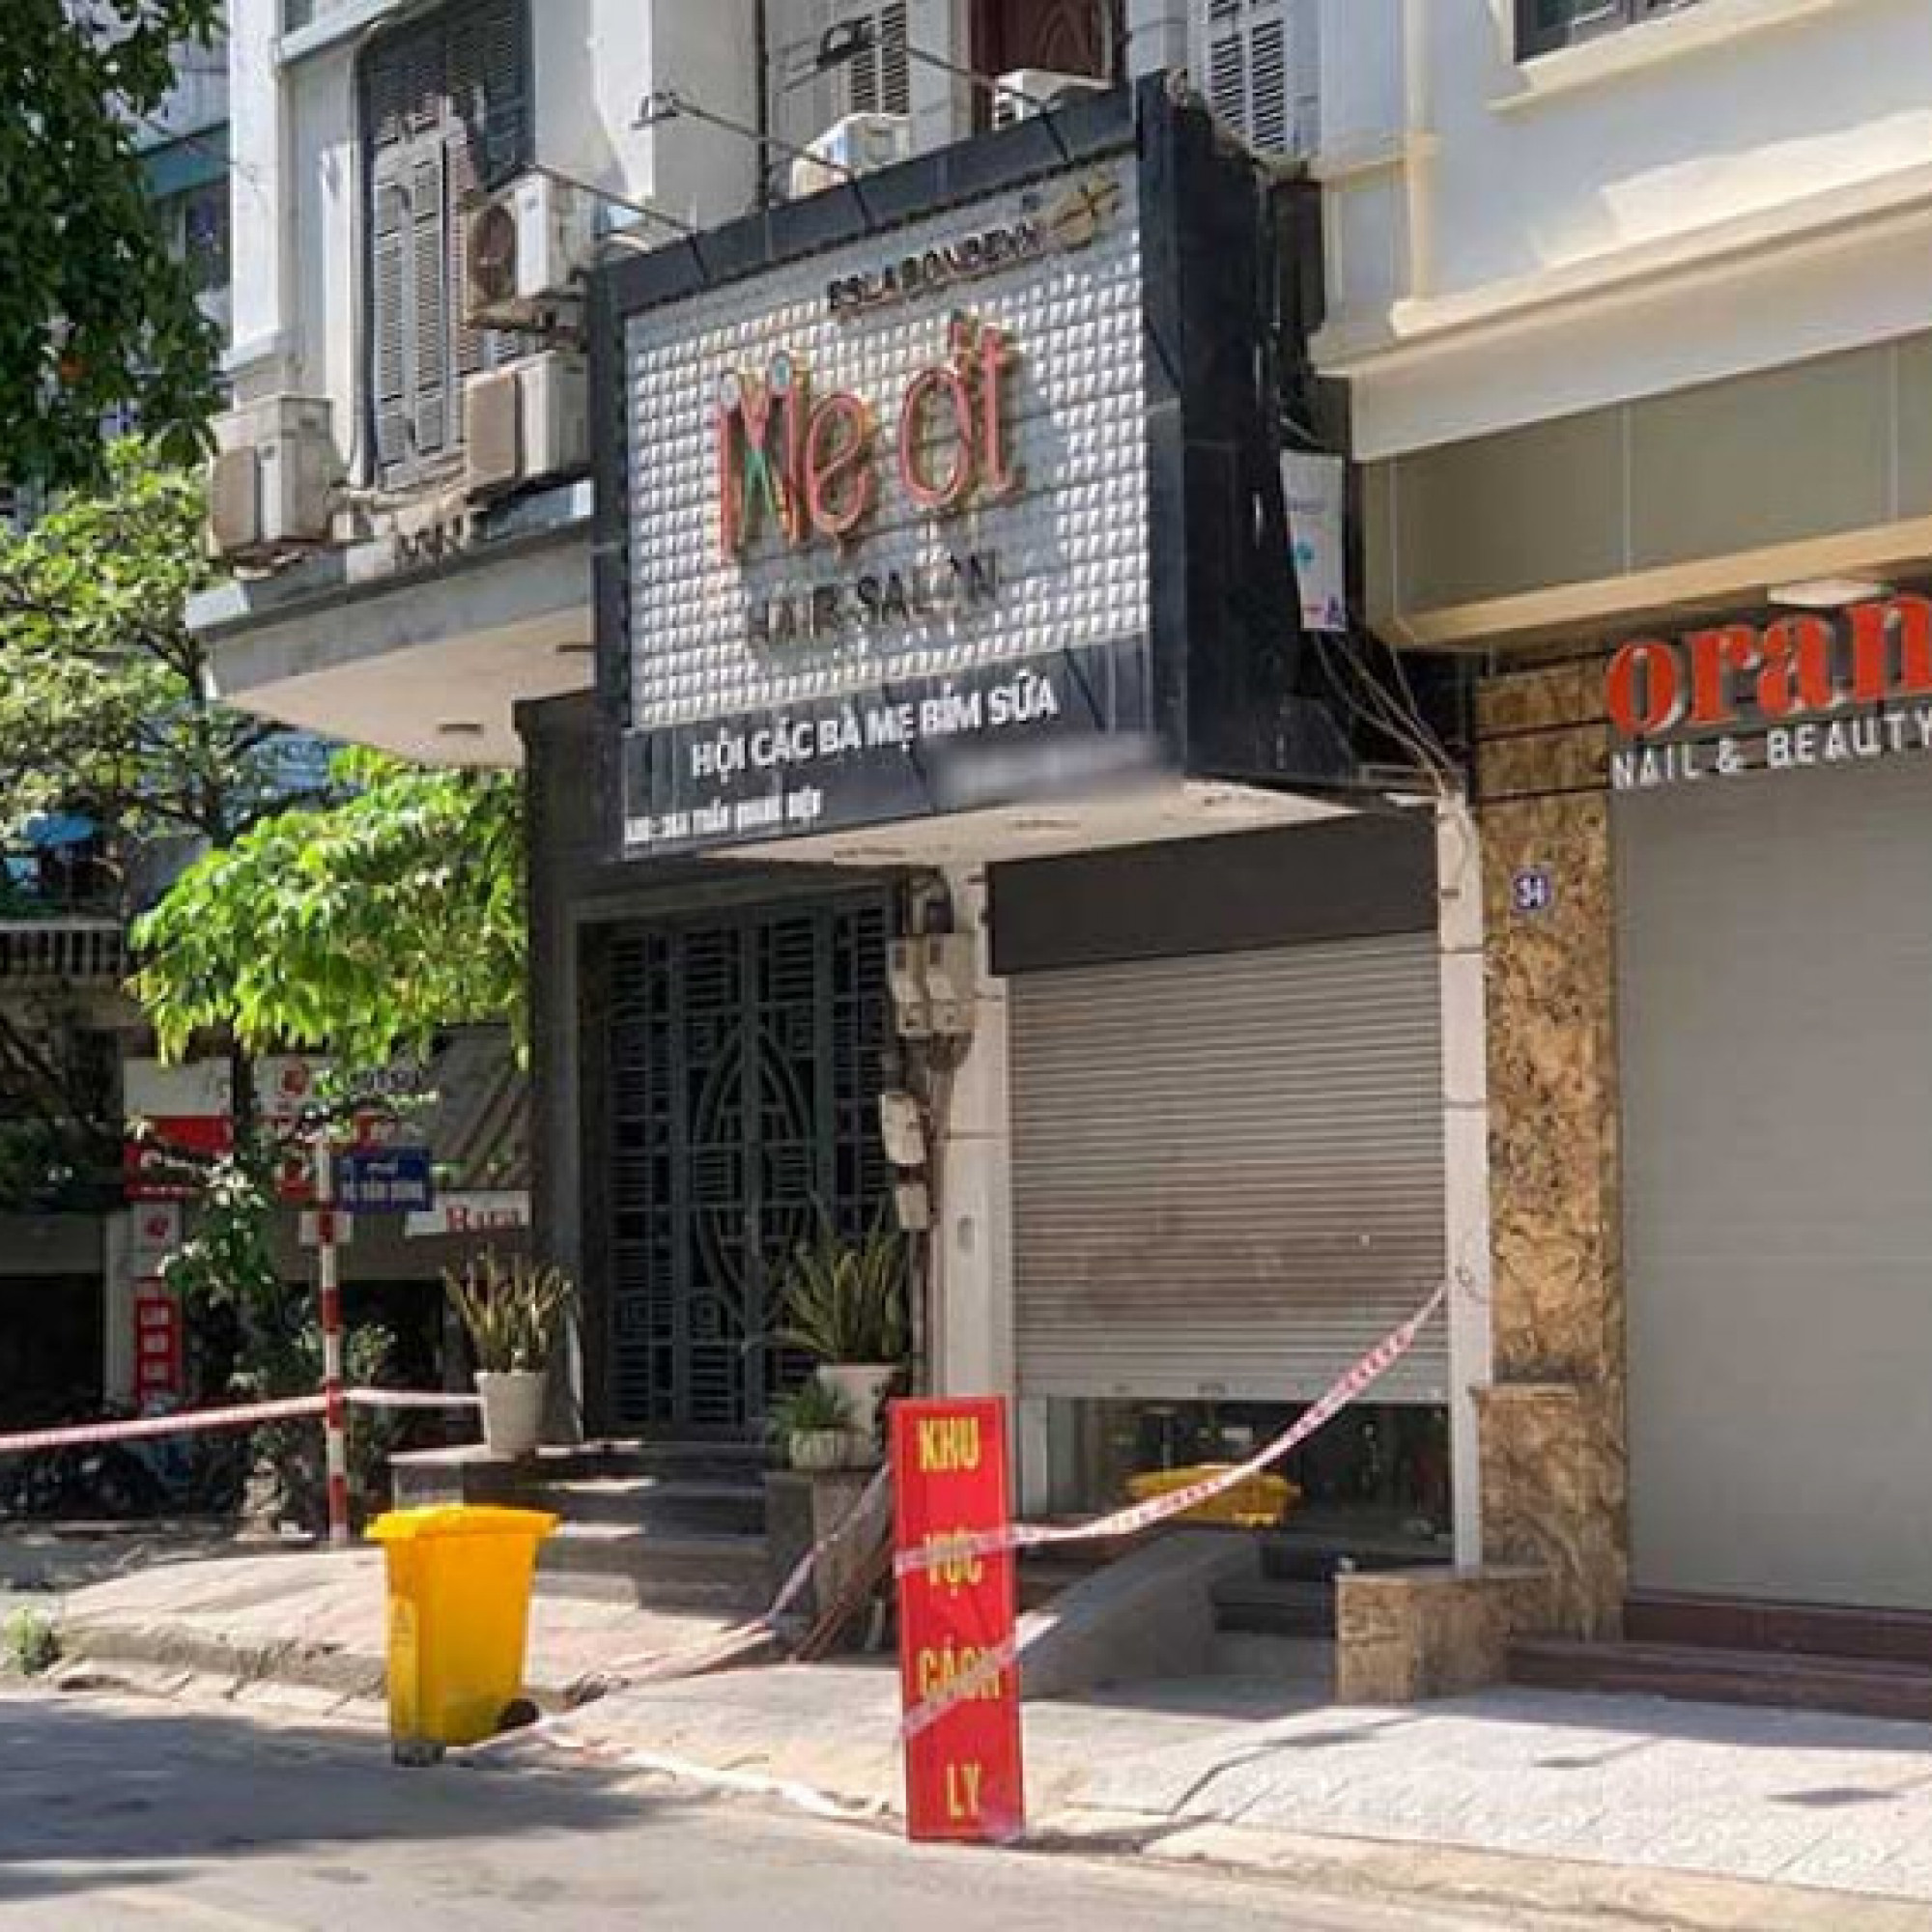 Chuyển động - Ổ dịch liên quan đến tiệm tóc Mẹ Ớt ở Hà Nội đã lan sang 2 tỉnh khác